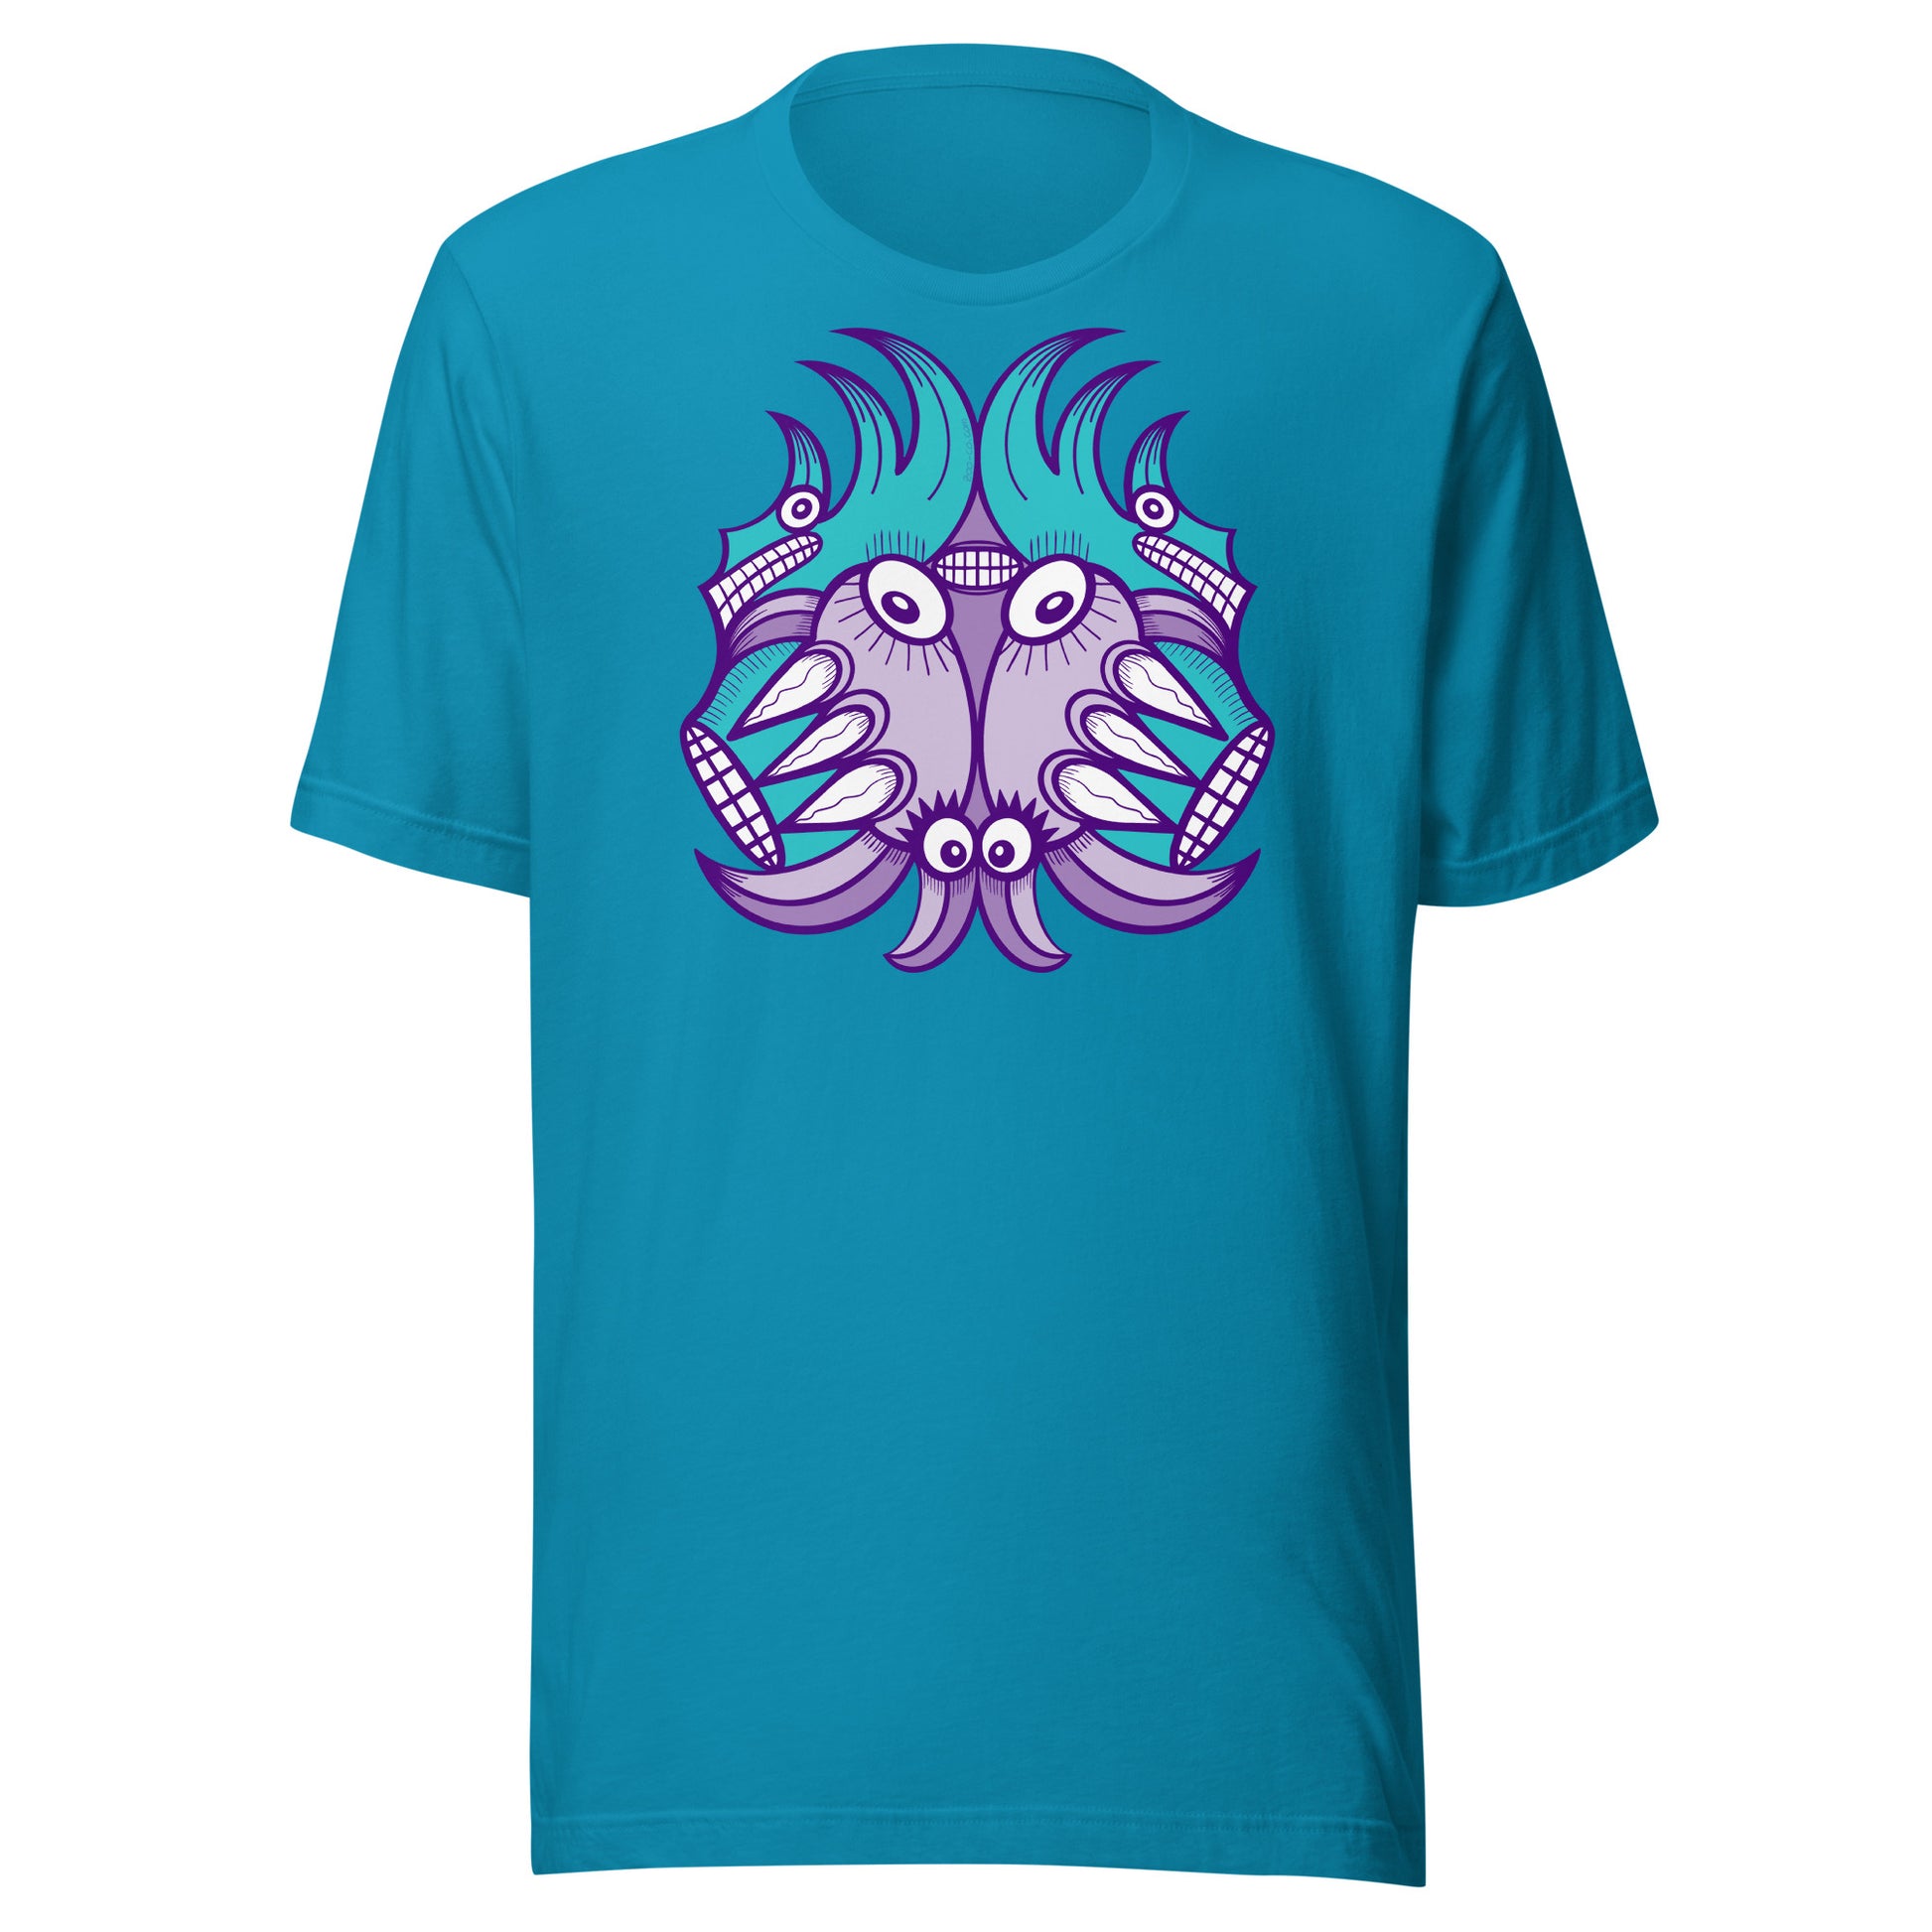 Aquatic creature nu Planet 5: Aquatic Creatures from the Doodles of the Galaxy - Unisex t-shirt. Aqua color. Front view